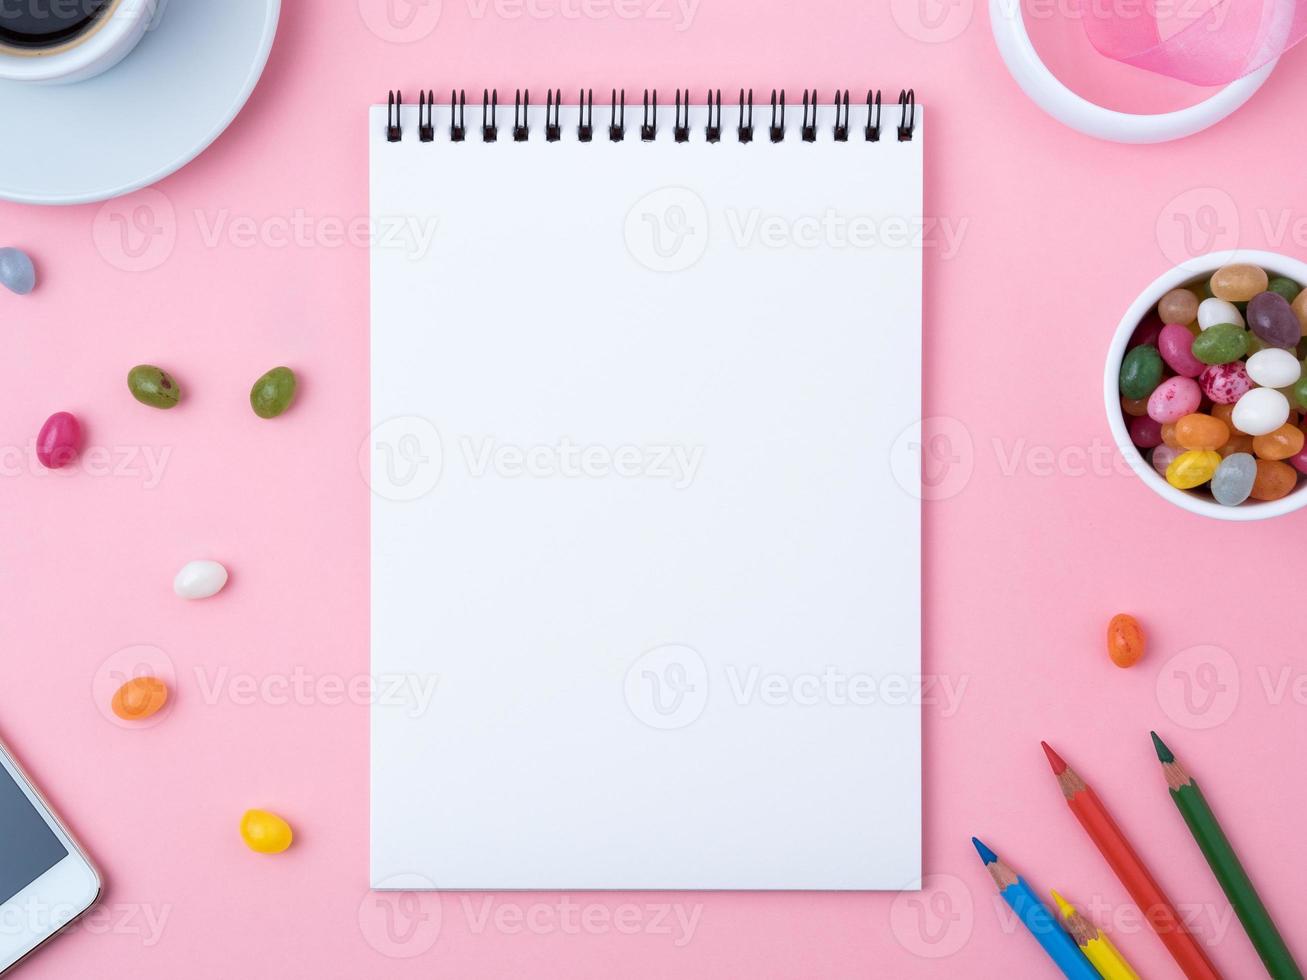 offenes notizbuch mit einem sauberen weißen blatt, karamell, lutschern, handy, kreide, tasse kaffee, dekorationen auf einem rosa hellen tisch. Mädchenarbeitsplatz für Kreativität, Pläne und Träume foto